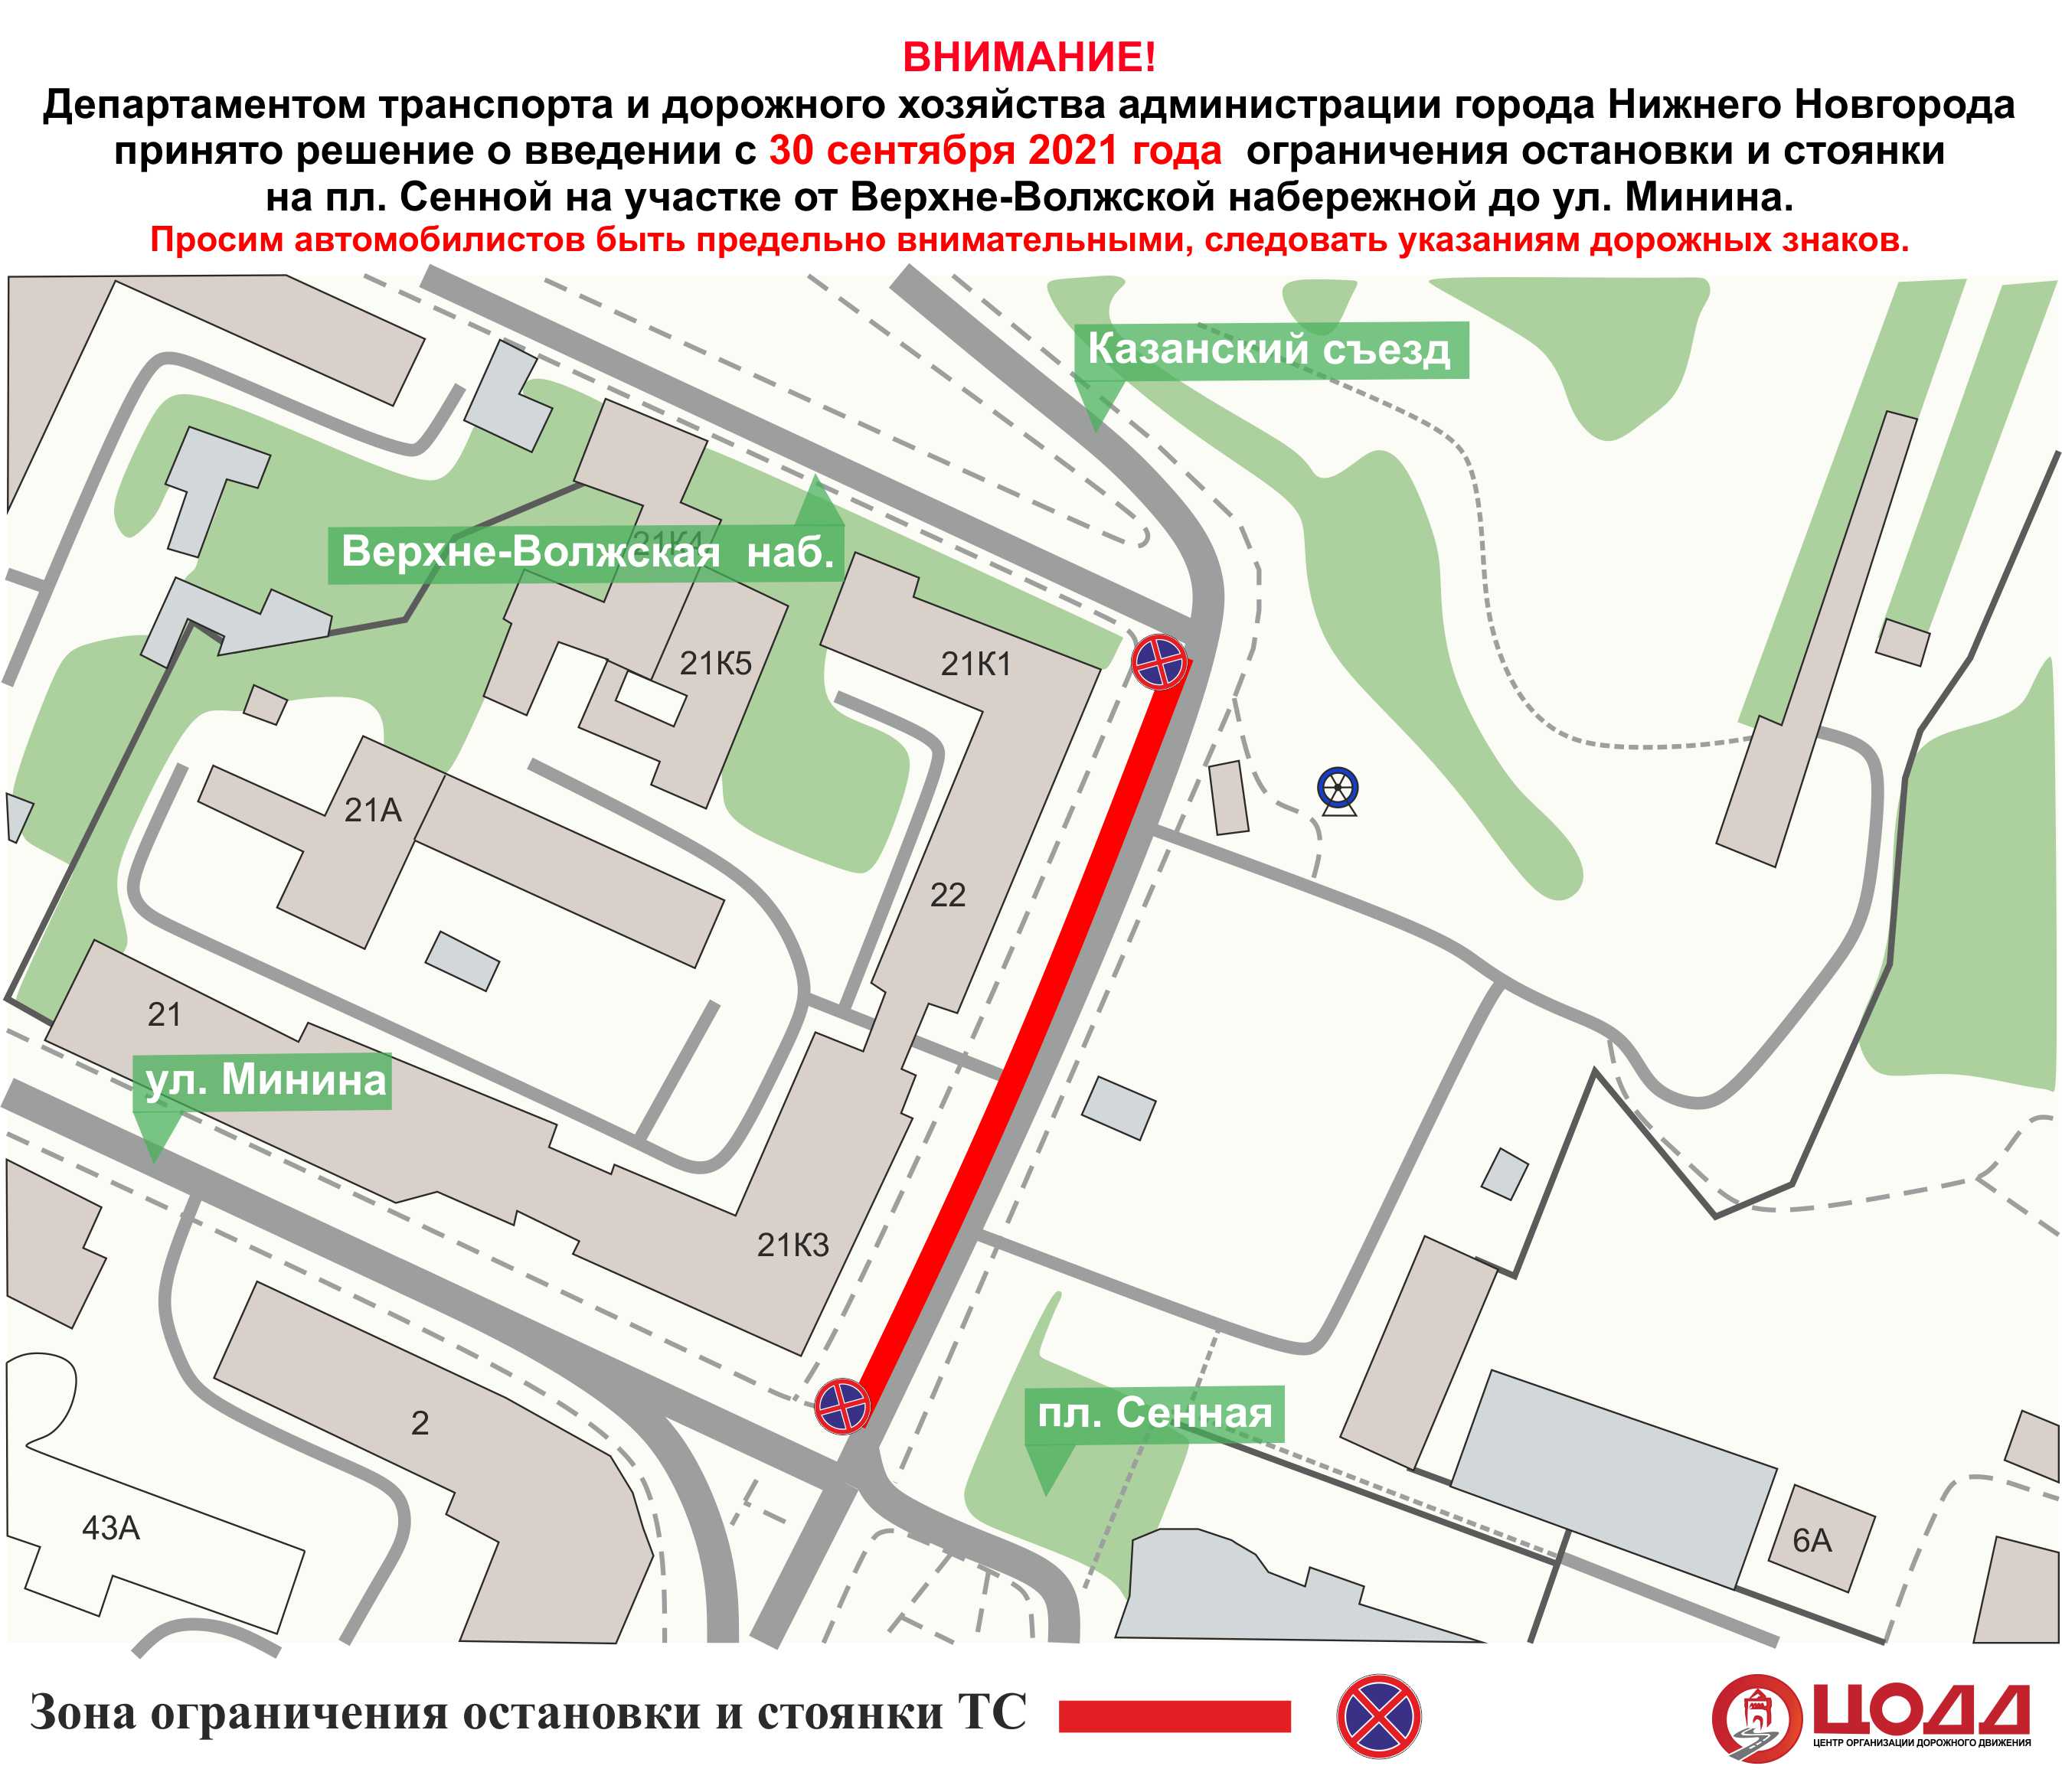 Нижегородцам запретят парковаться на Сенной площади с 30 сентября - фото 1